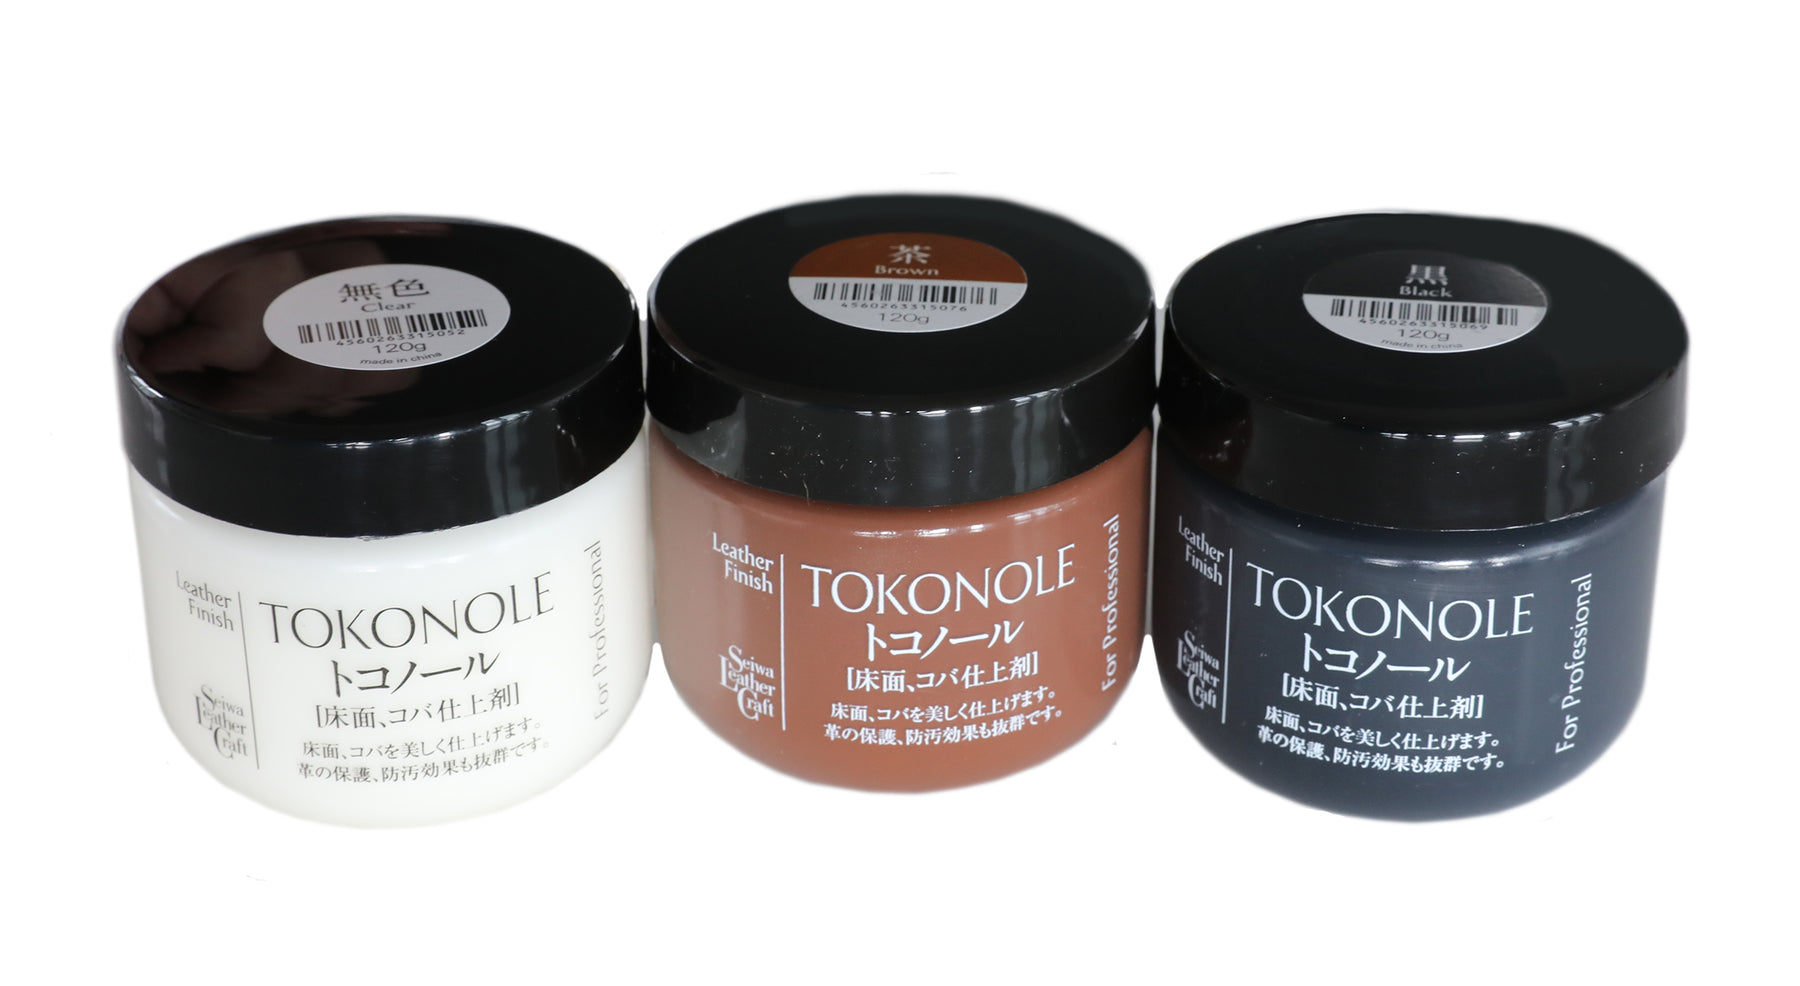 Tokonole burnishing gum for leather - Leatherbox